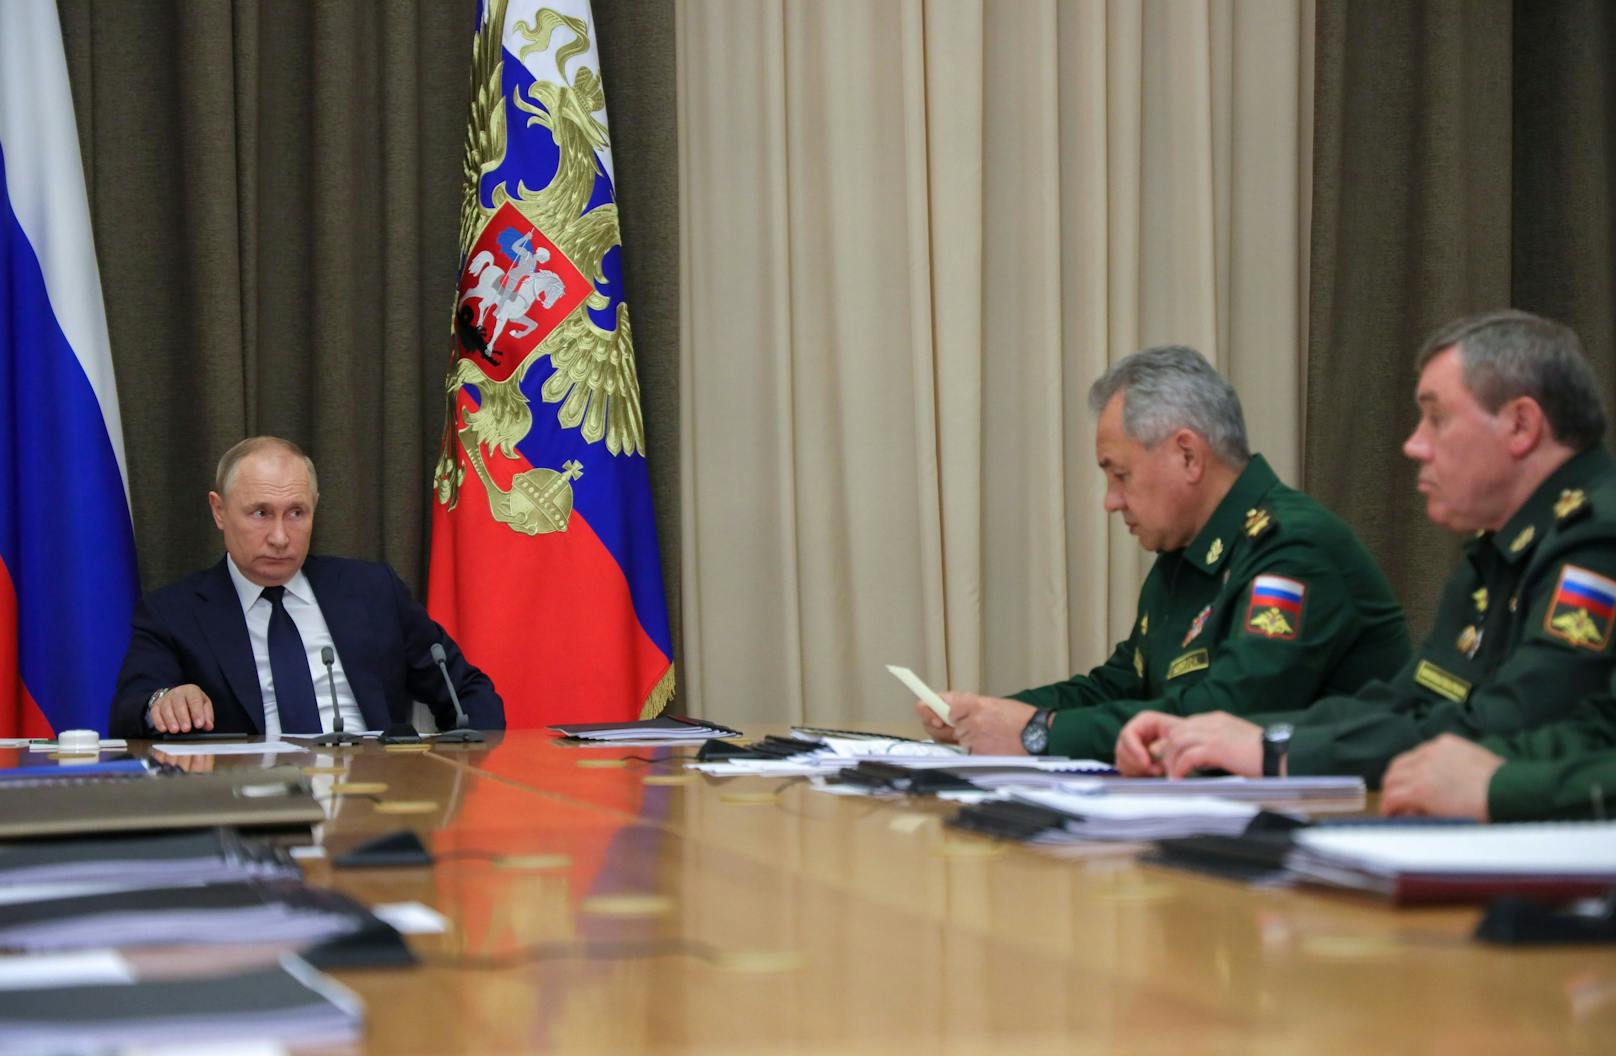 Russlands Präsident Wladimir Putin dürfte mit der Leistung seiner Armee aktuell wenig zufrieden sein. Im Bild mit Verteidigungsminister Schoigu und Generalstabschef Gerassimow.